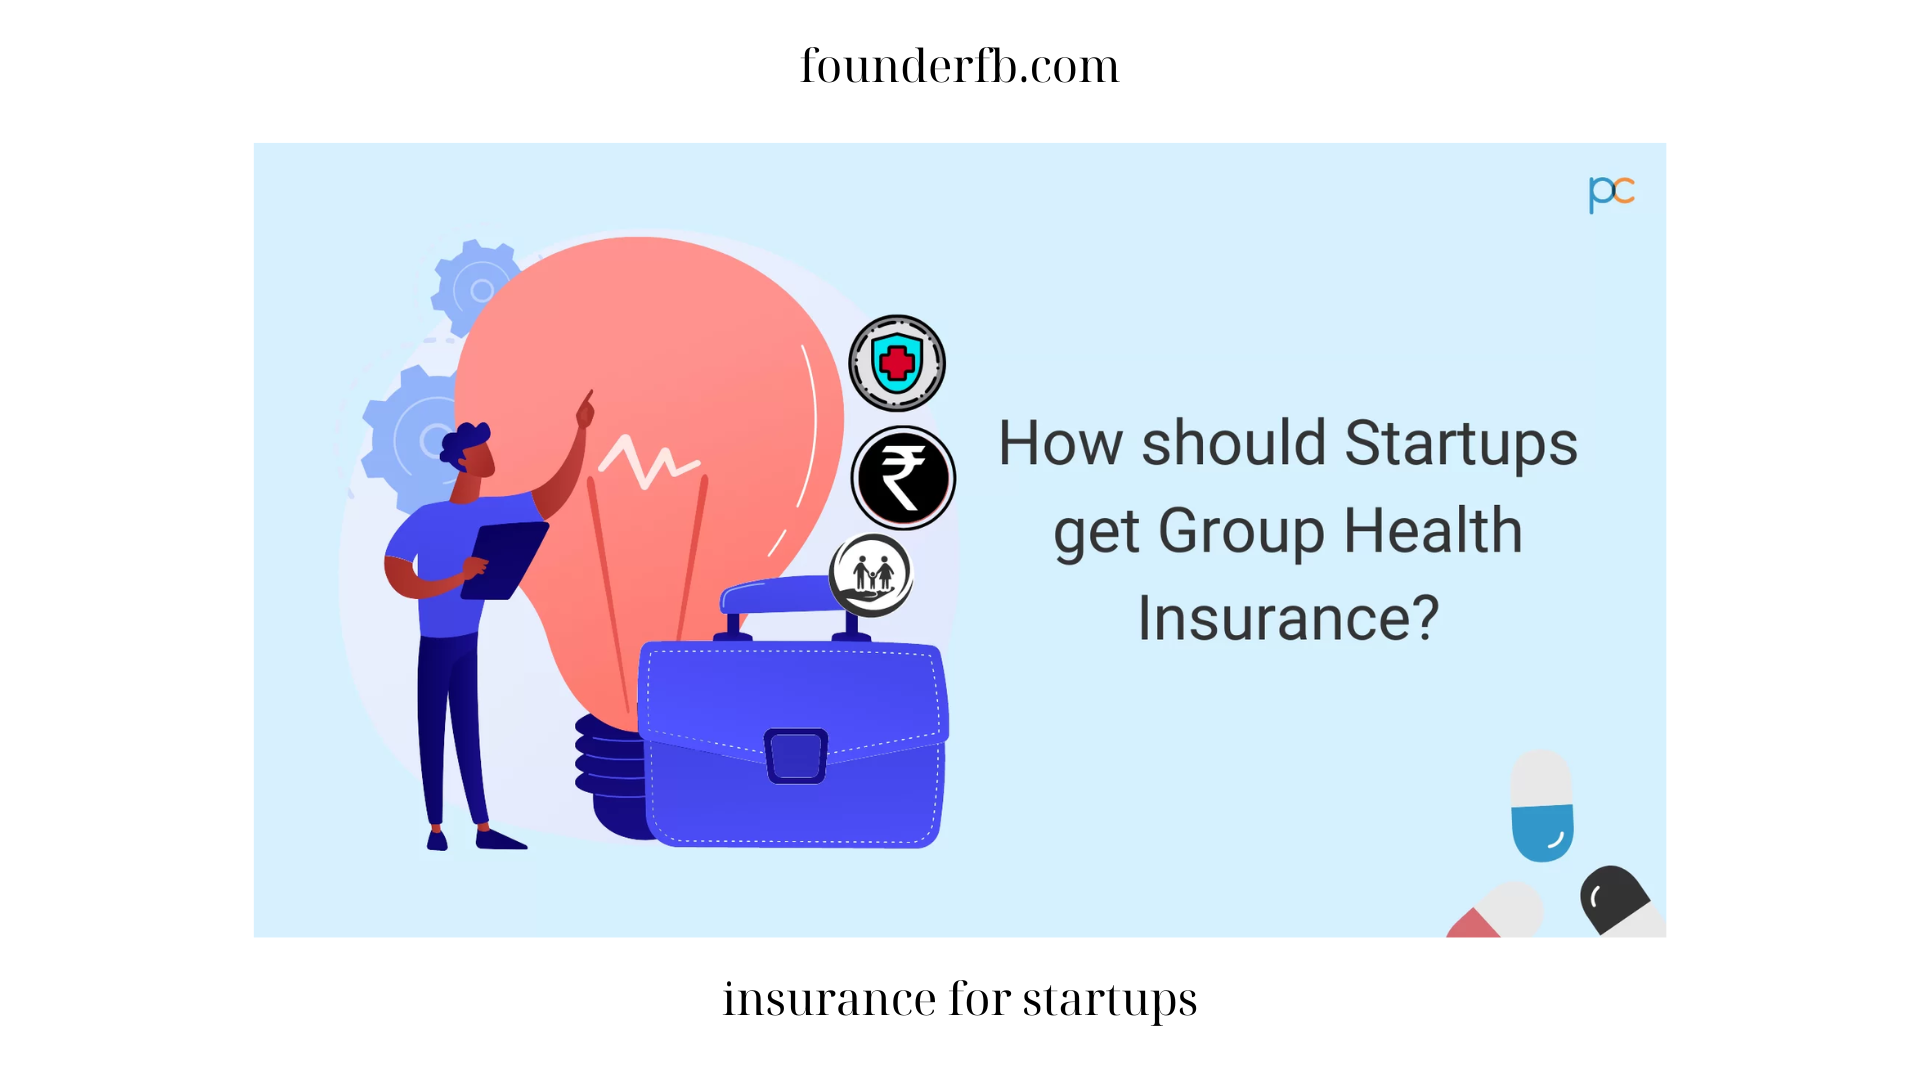 insurance for startups